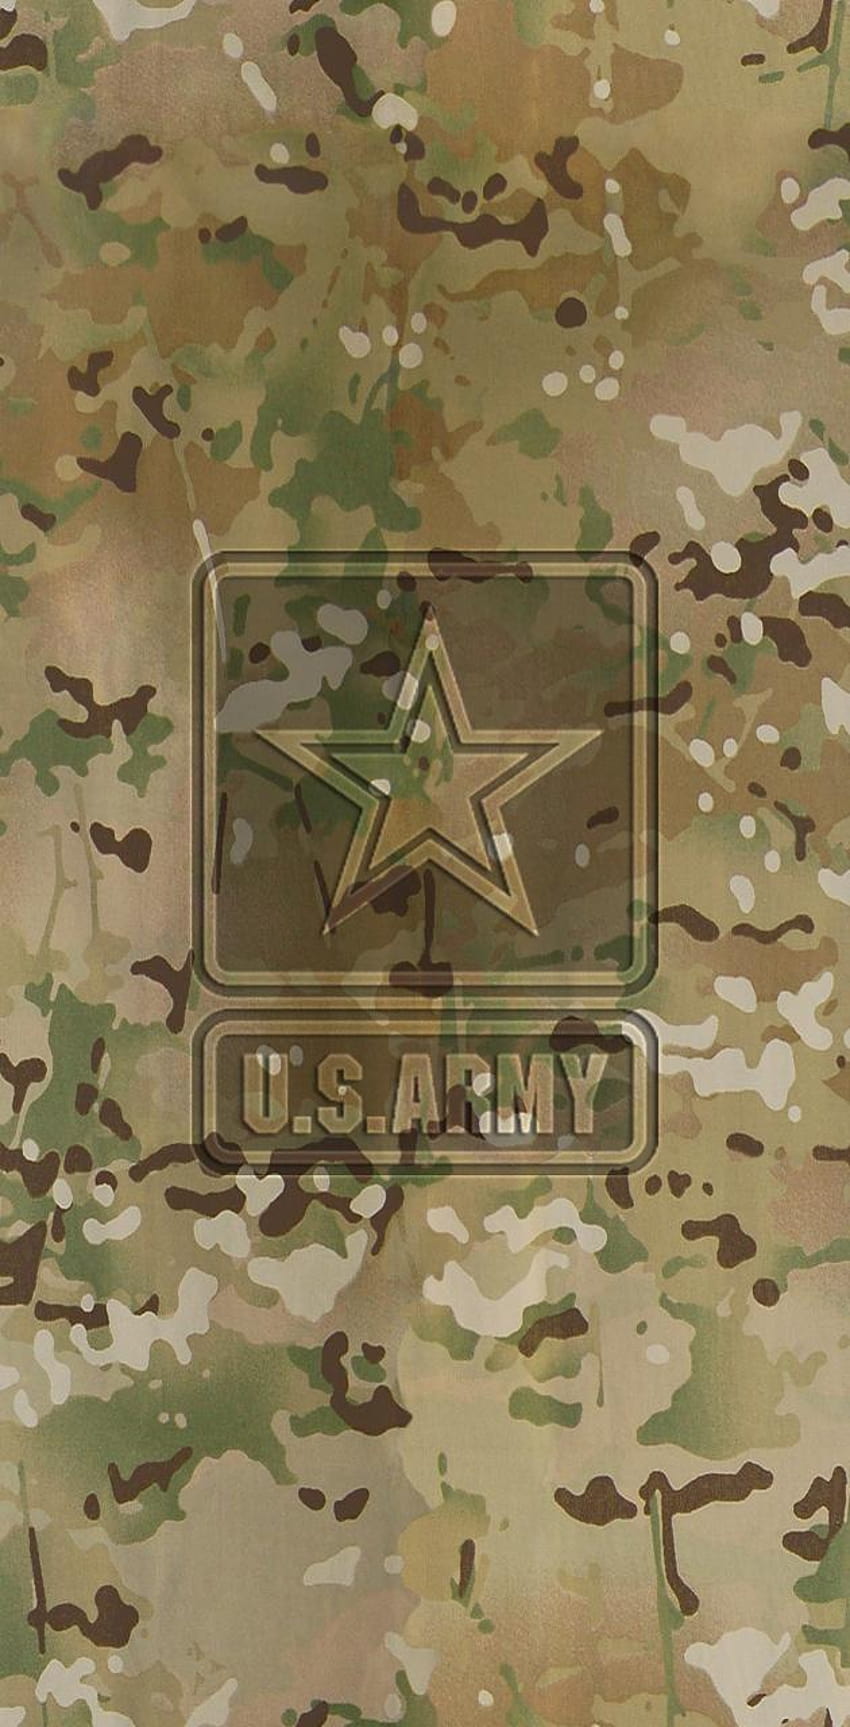 Ejército de EE. UU. por Studio929, ejército de EE. UU. fondo de pantalla del teléfono